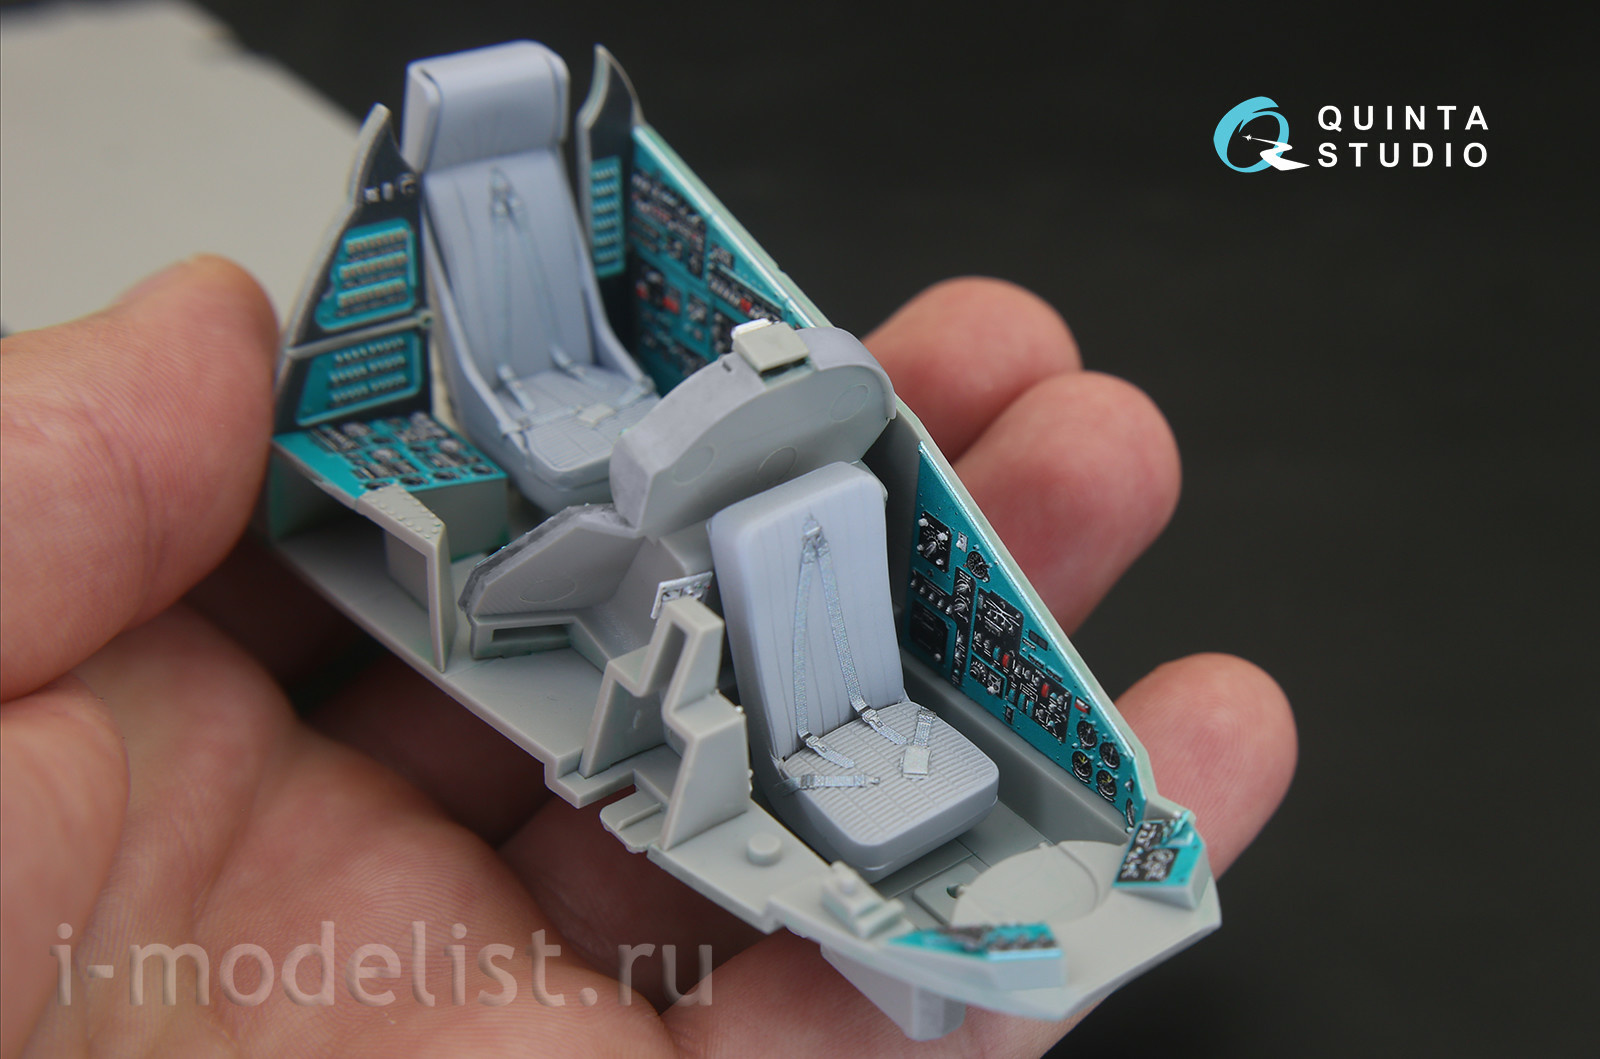 QD35020 Quinta Studio 1/35 3D Декаль интерьера кабины Мu-24В (для модели Трубач)